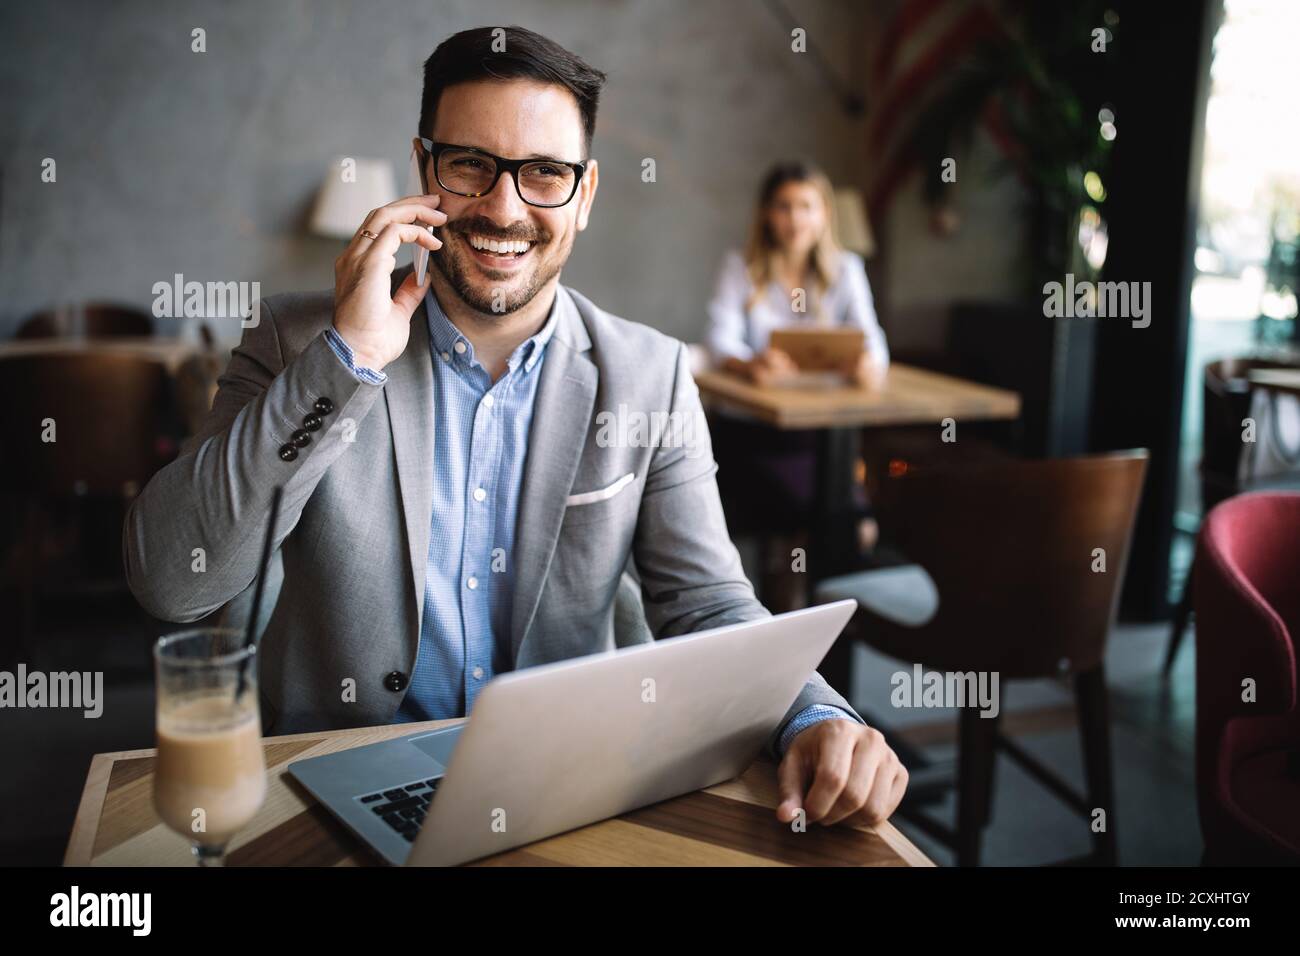 Apuesto hombre de negocios feliz recibir un mensaje en su teléfono celular Foto de stock